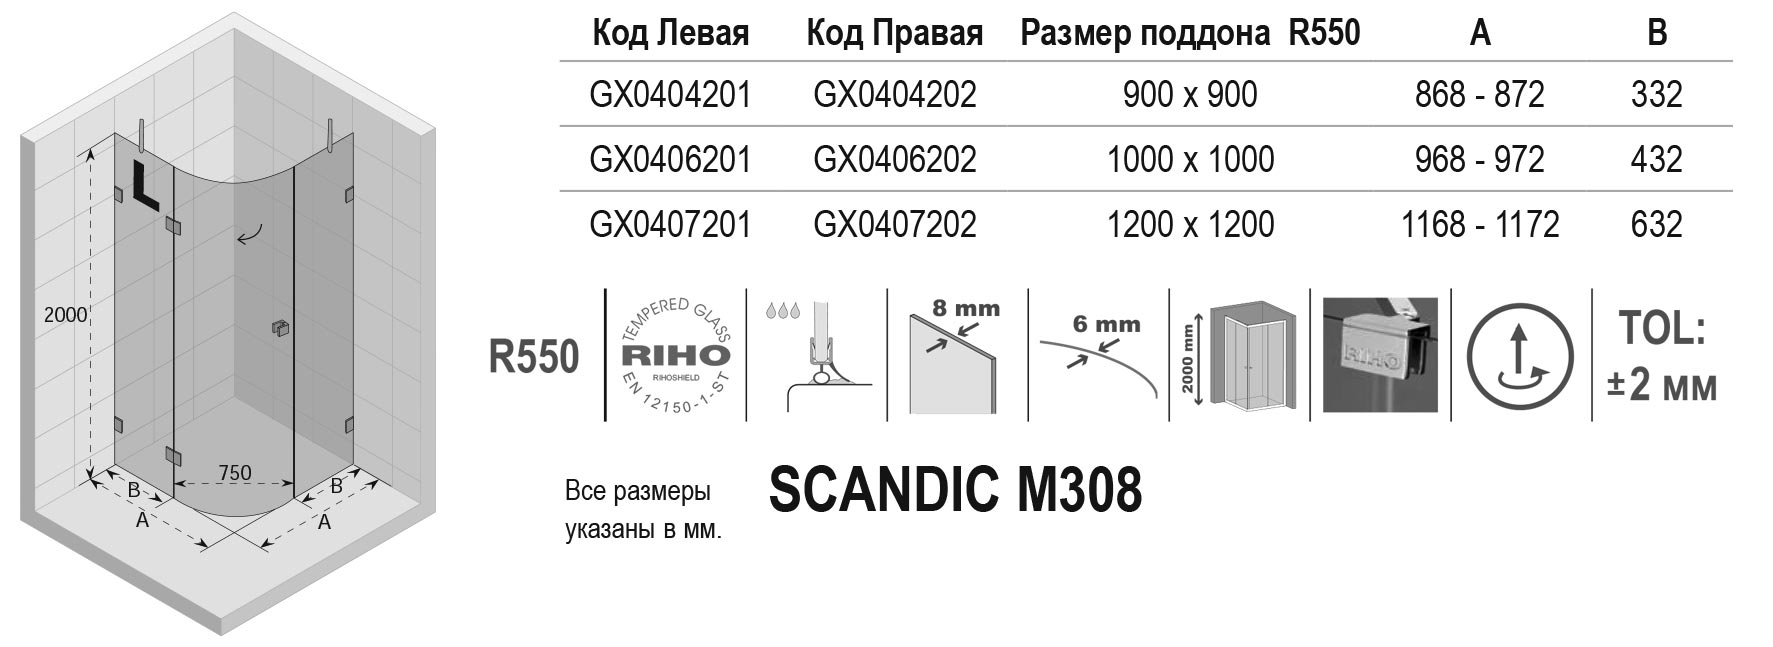 Чертёж Riho Scandic M308 GX0406202